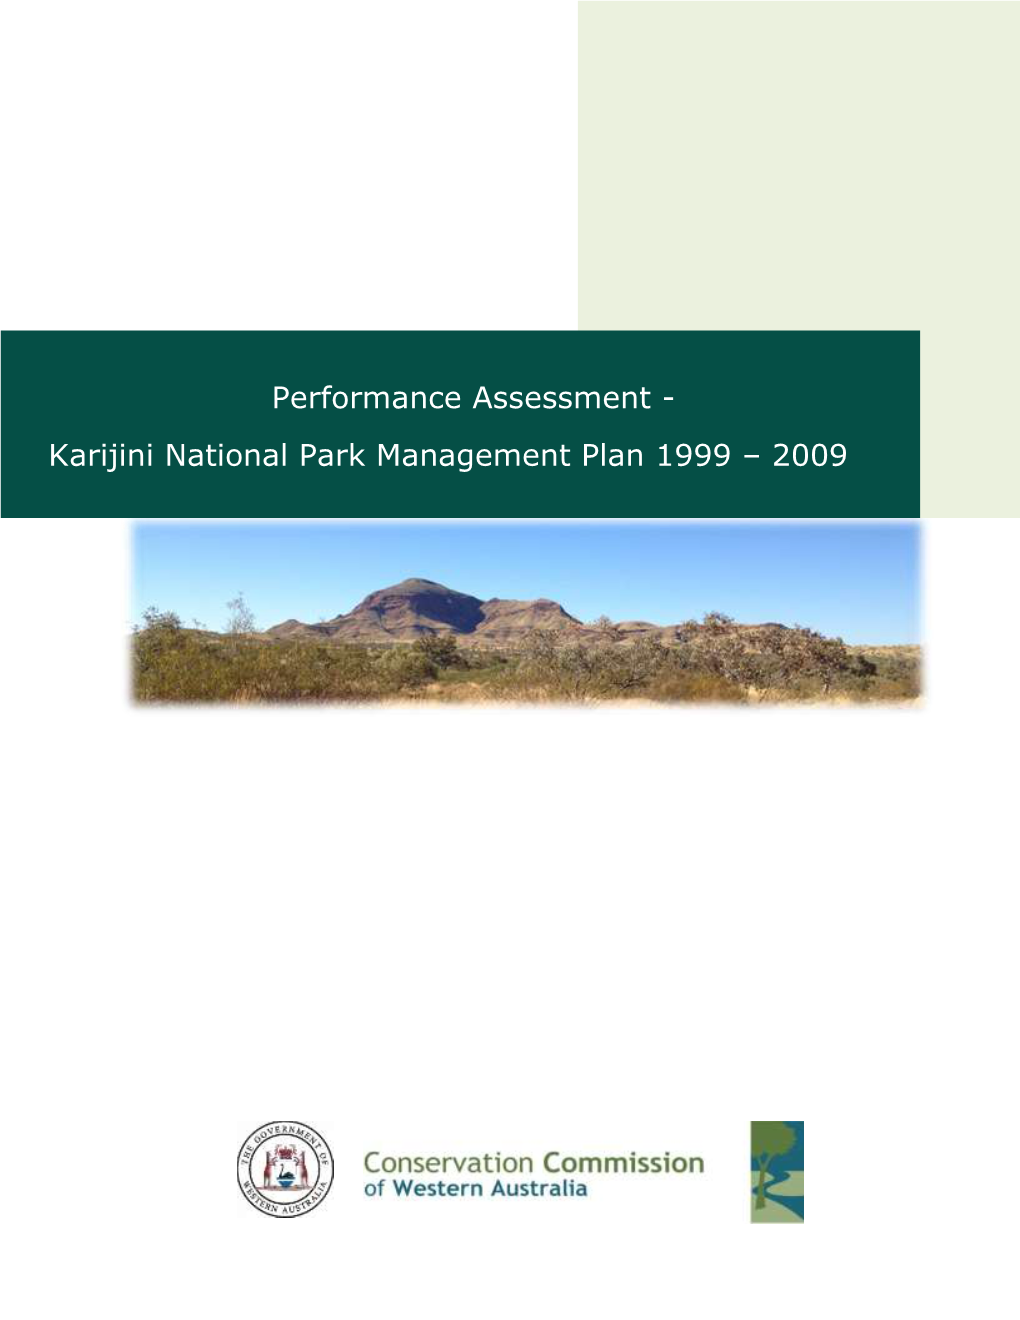 Karijini National Park Management Plan 1999 – 2009